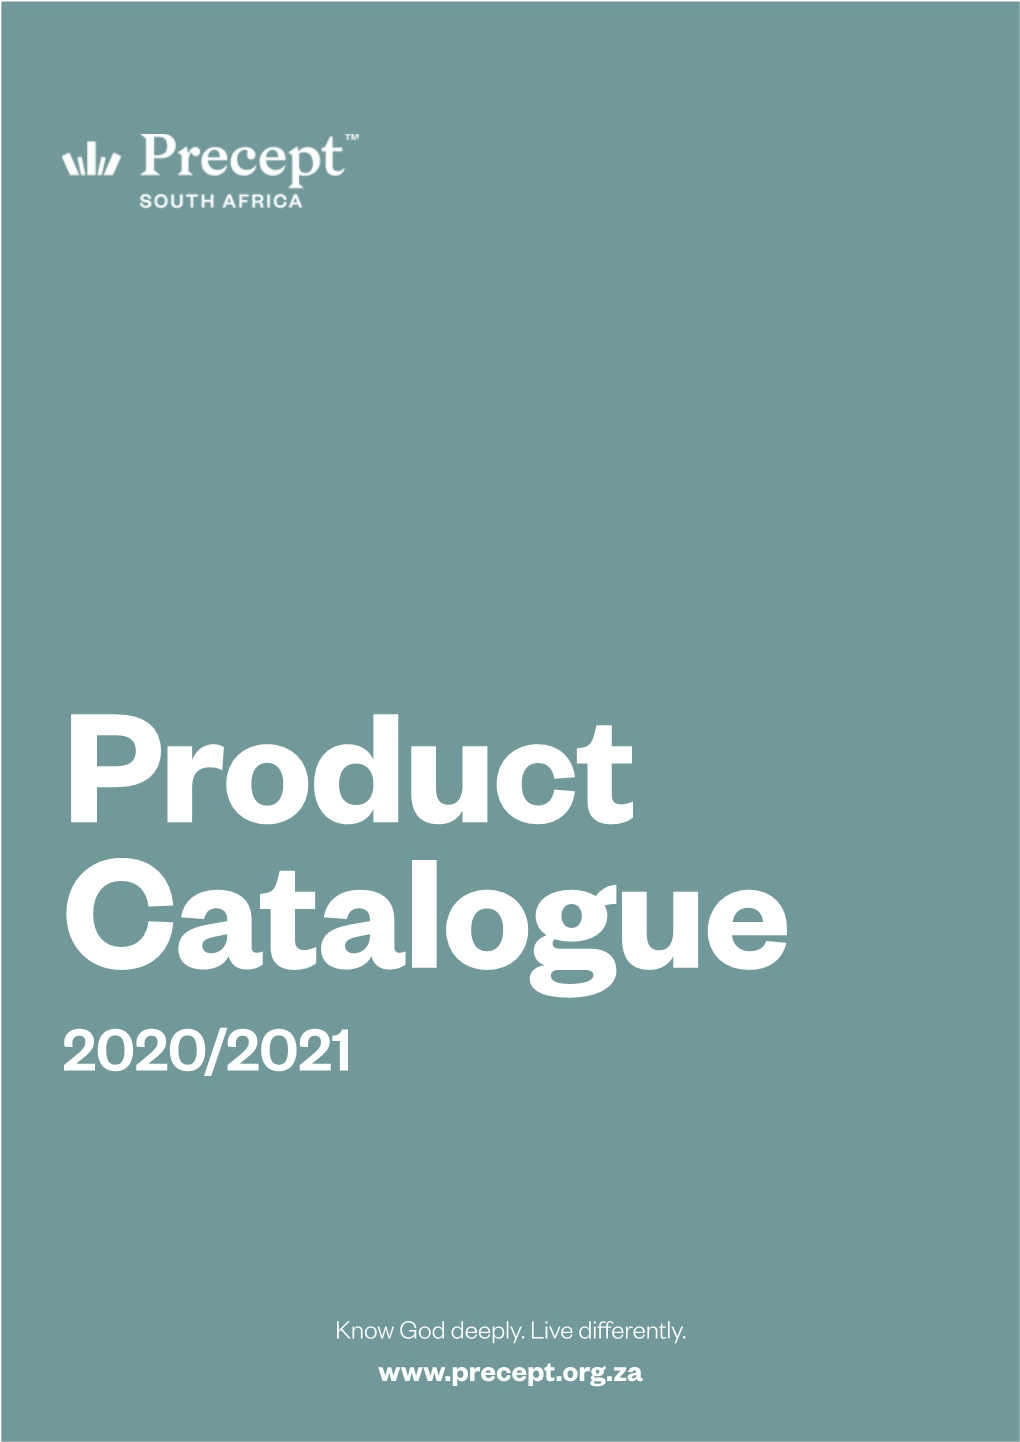 Catalogue 2020/2021